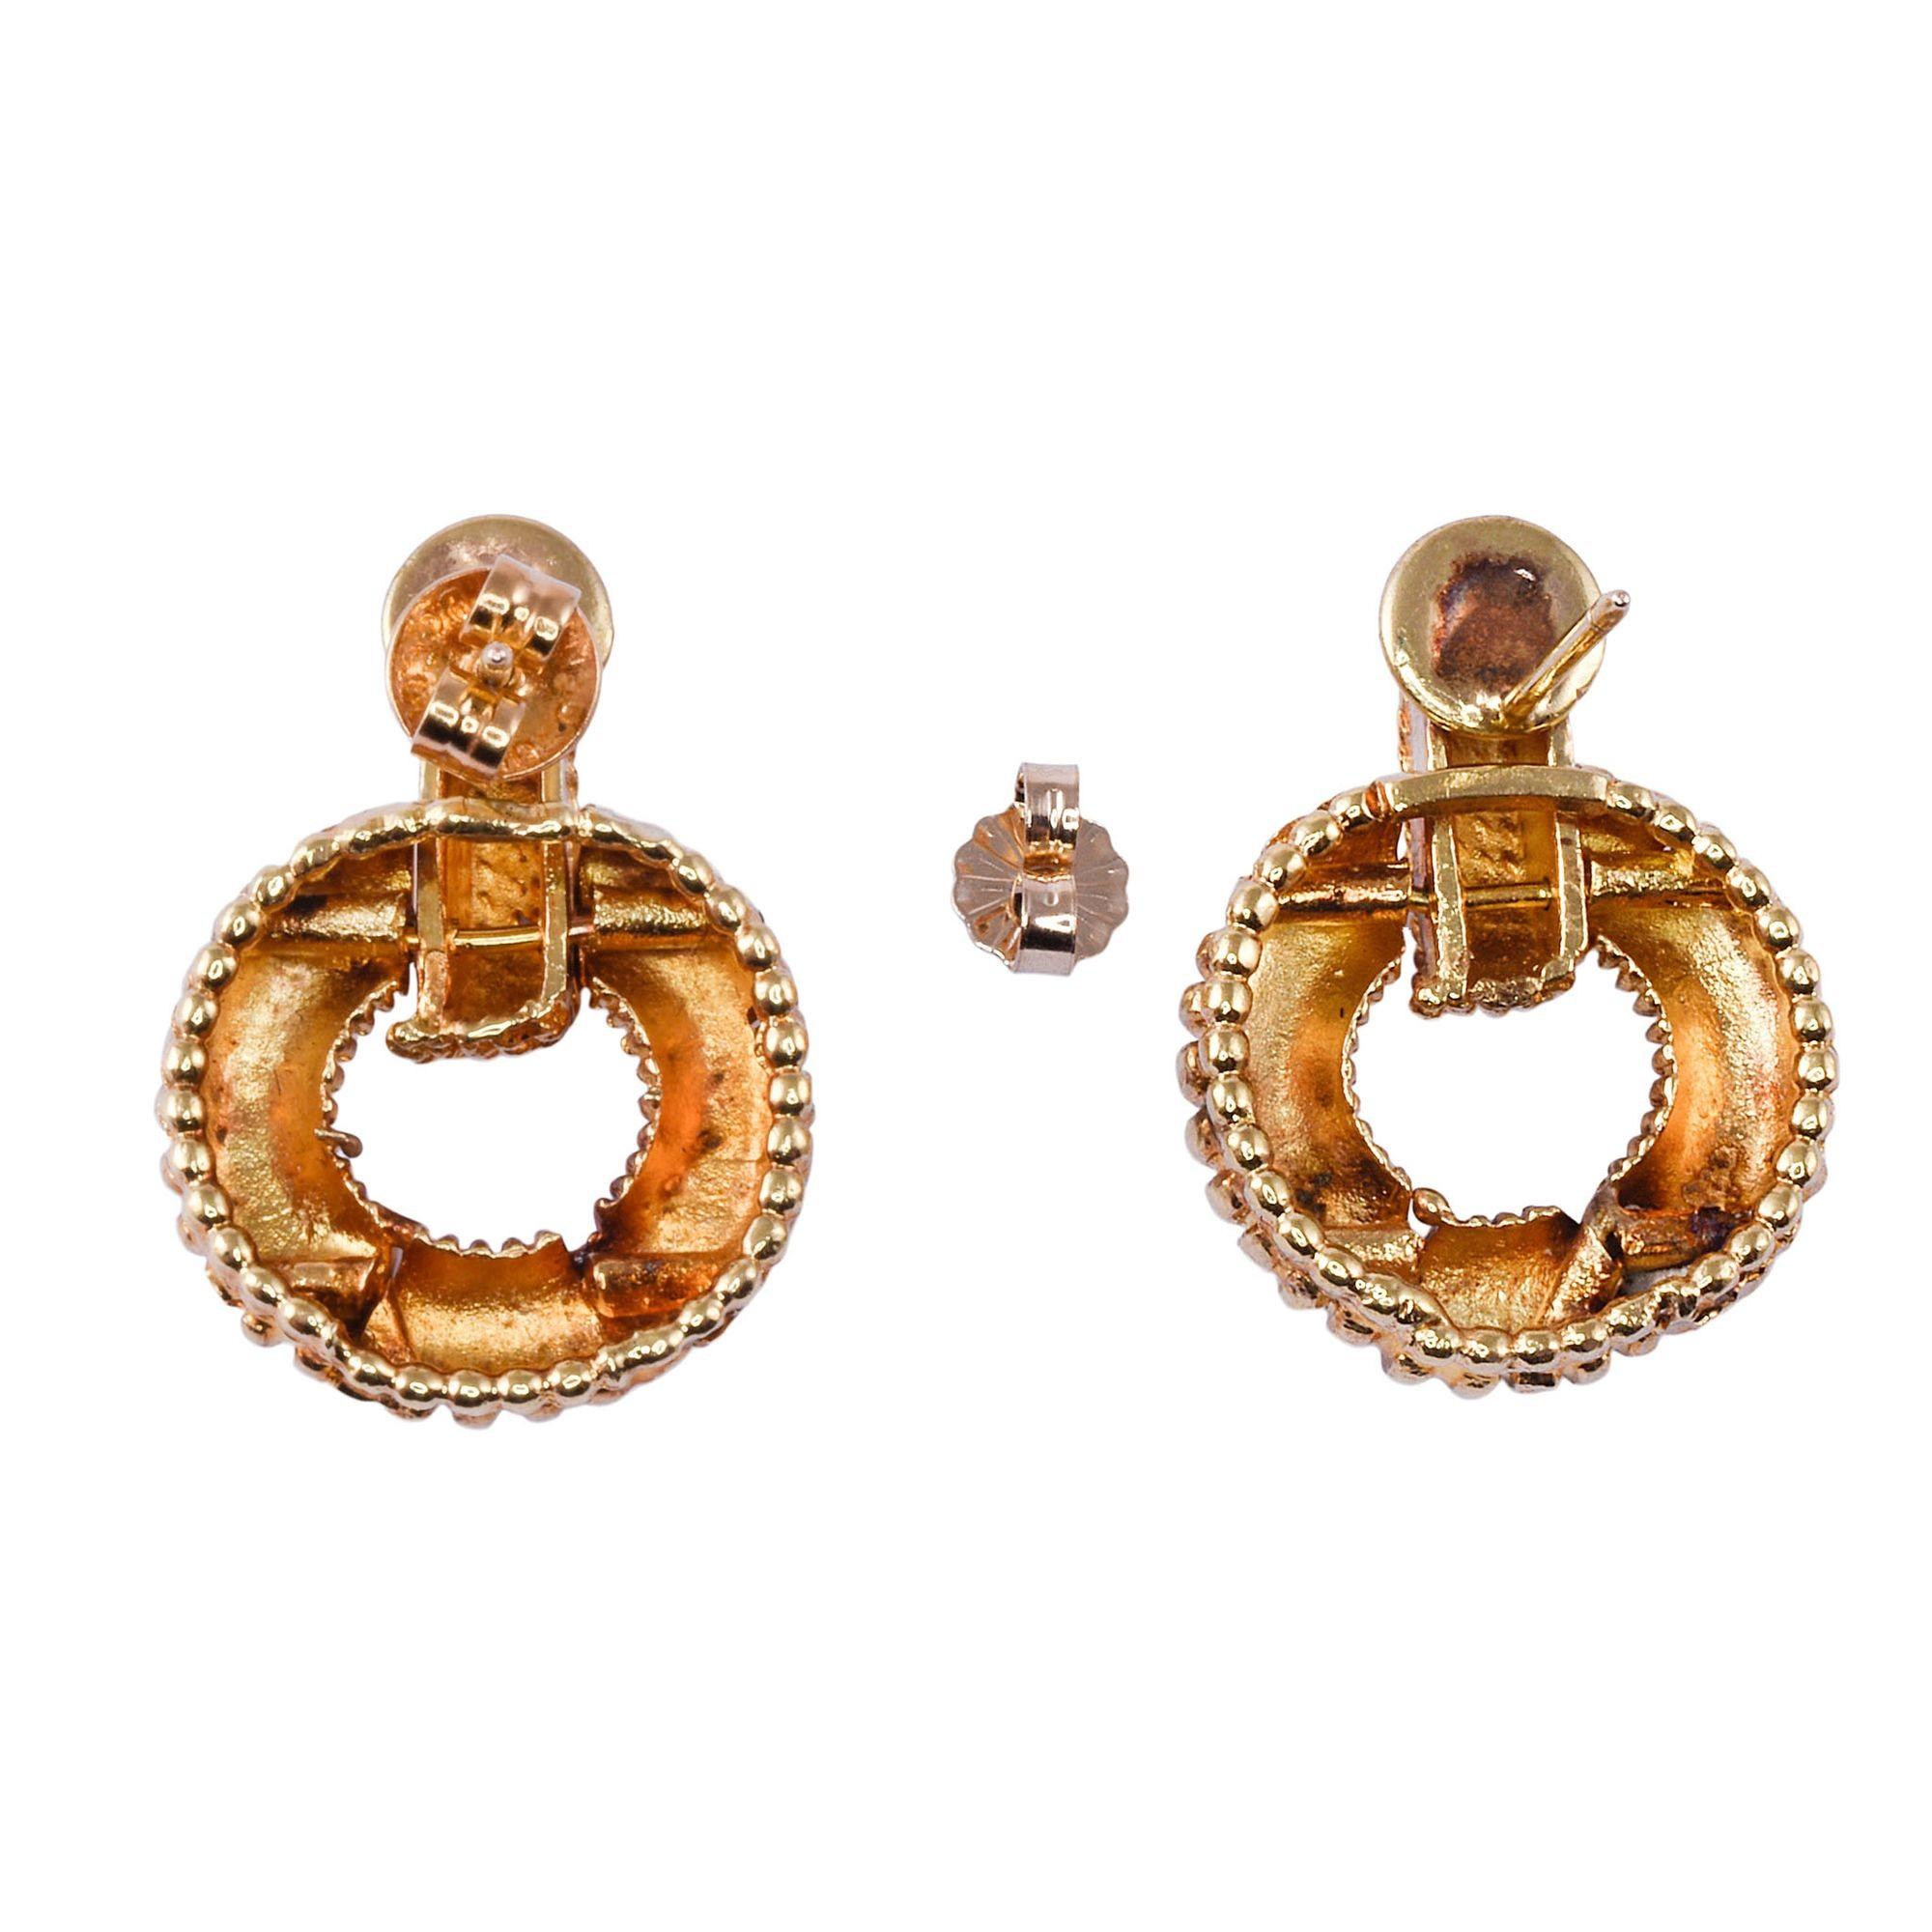 Vintage Ohrringe im Stil eines Türklopfers aus 18 Karat Gold, ca. 1960-70. Diese Vintage-Ohrringe sind aus 18 Karat Gelbgold gefertigt und haben ein Gewicht von 15,8 Gramm. [KIMH 578]

Abmessungen
25mm H x 19mm B